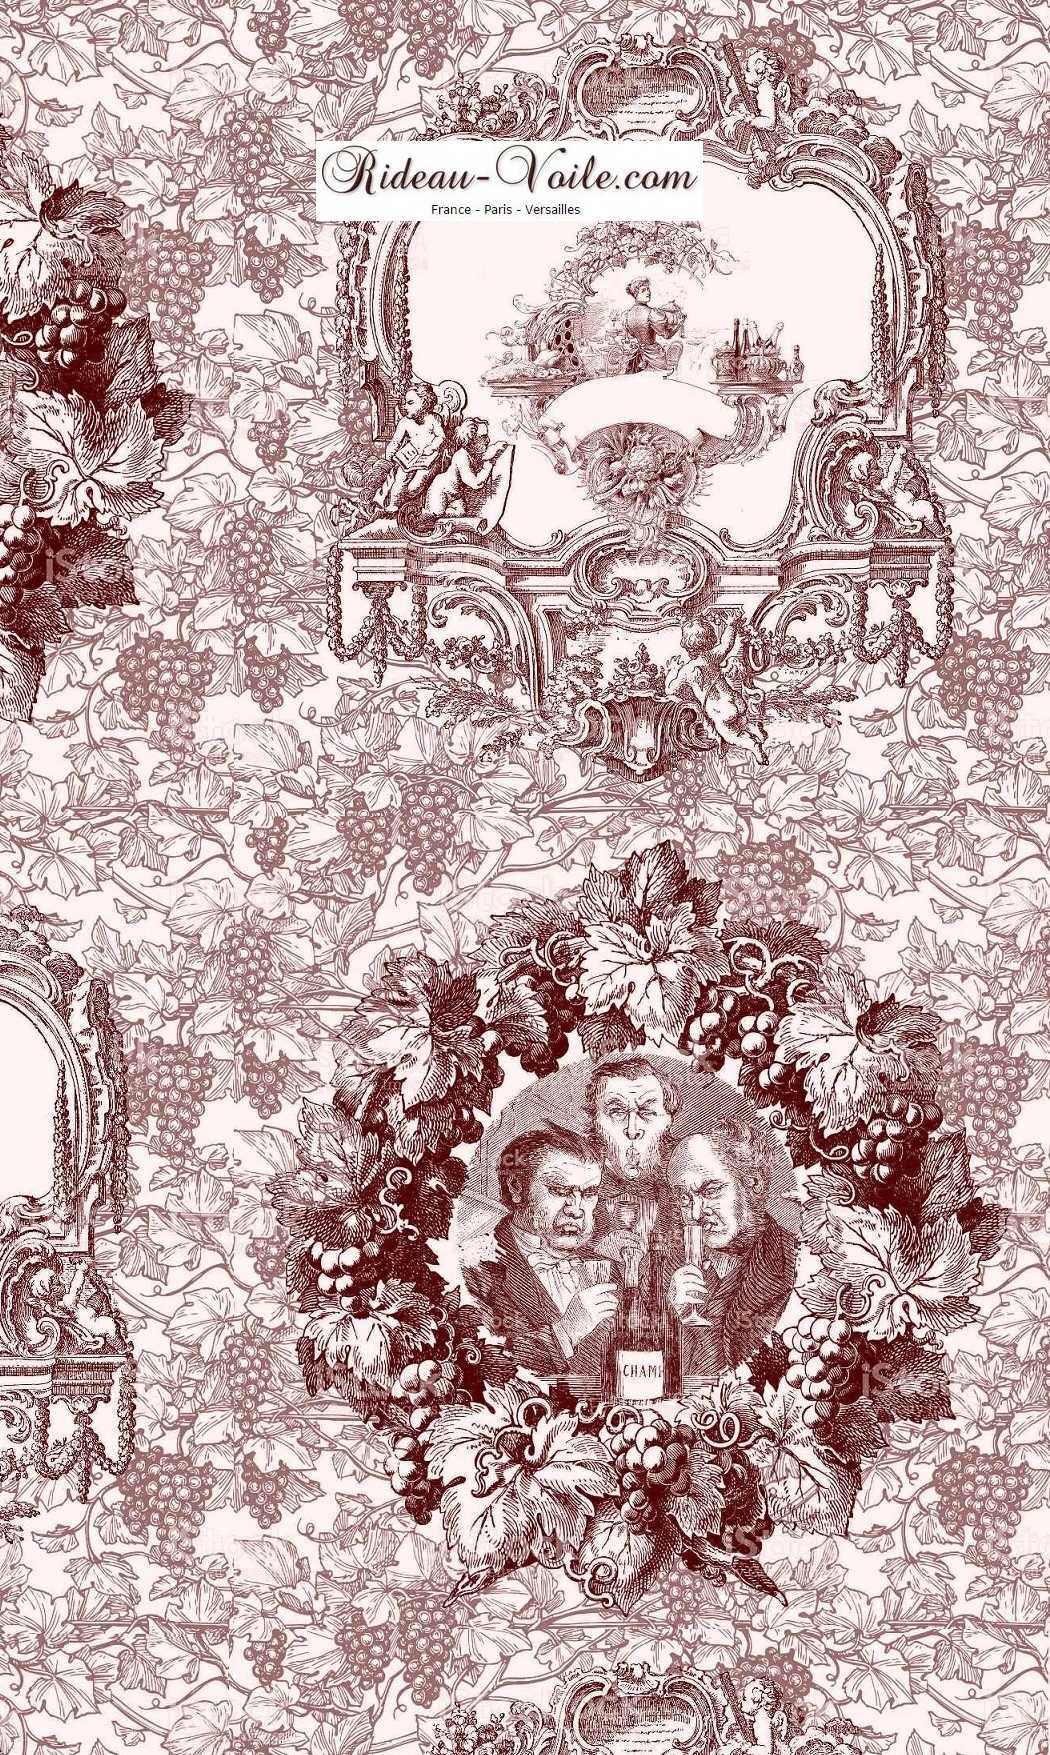 Tissu imprimé rougeToile de Jouy Tissu au mètre comment acheter trouver boutique Paris toile de jouy  pour décoration, agencement,  haut gamme sur mesure. Papier peint, luminaire, abat-jour, rideau, couette et coussin. ignifugé, occultant, Versailles, Nice, Monaco.